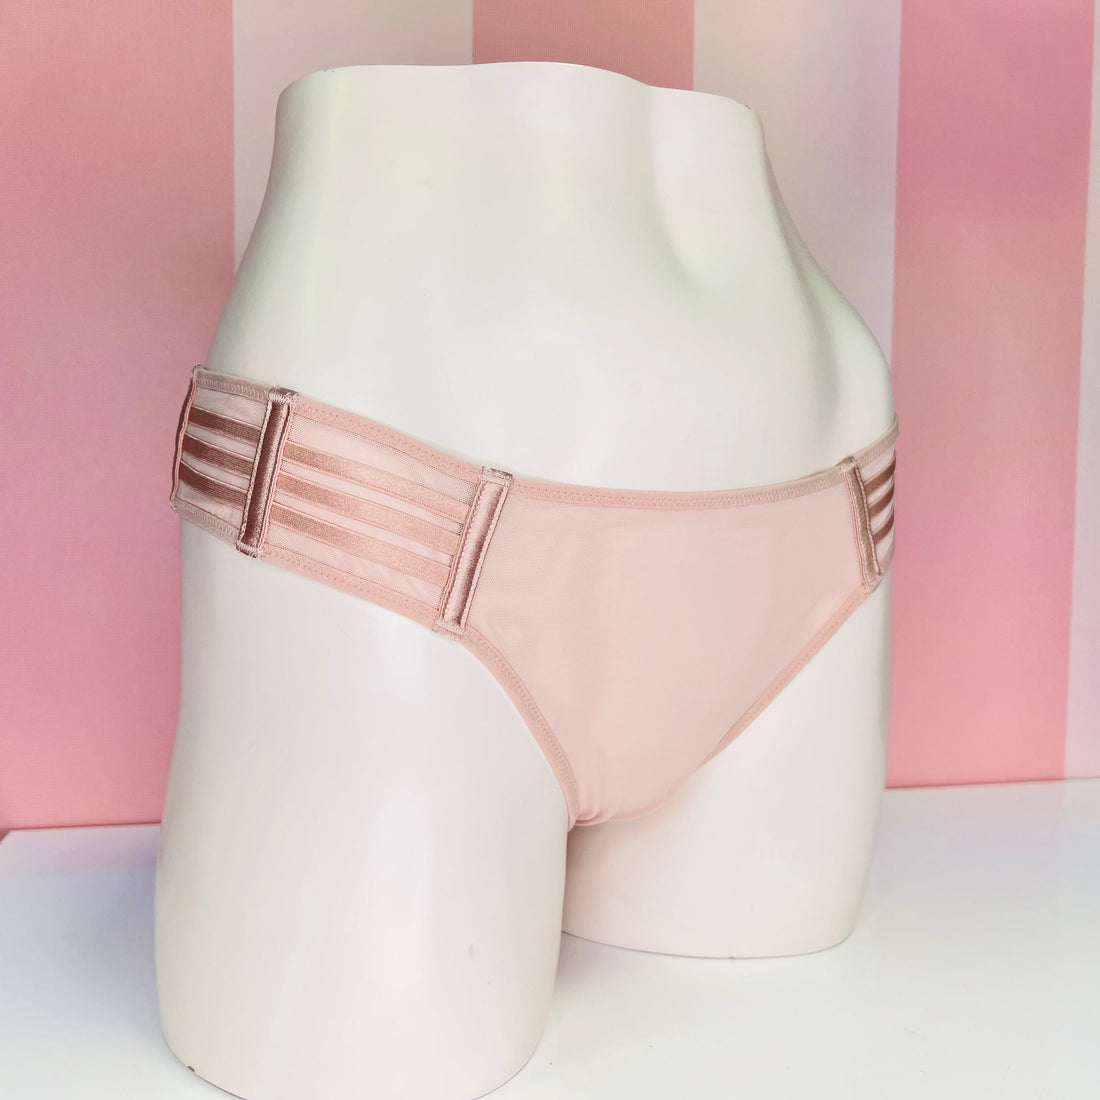 Síťované kalhotky - L / Růžová / Nové se štítky - Kalhotky Victoria’s Secret